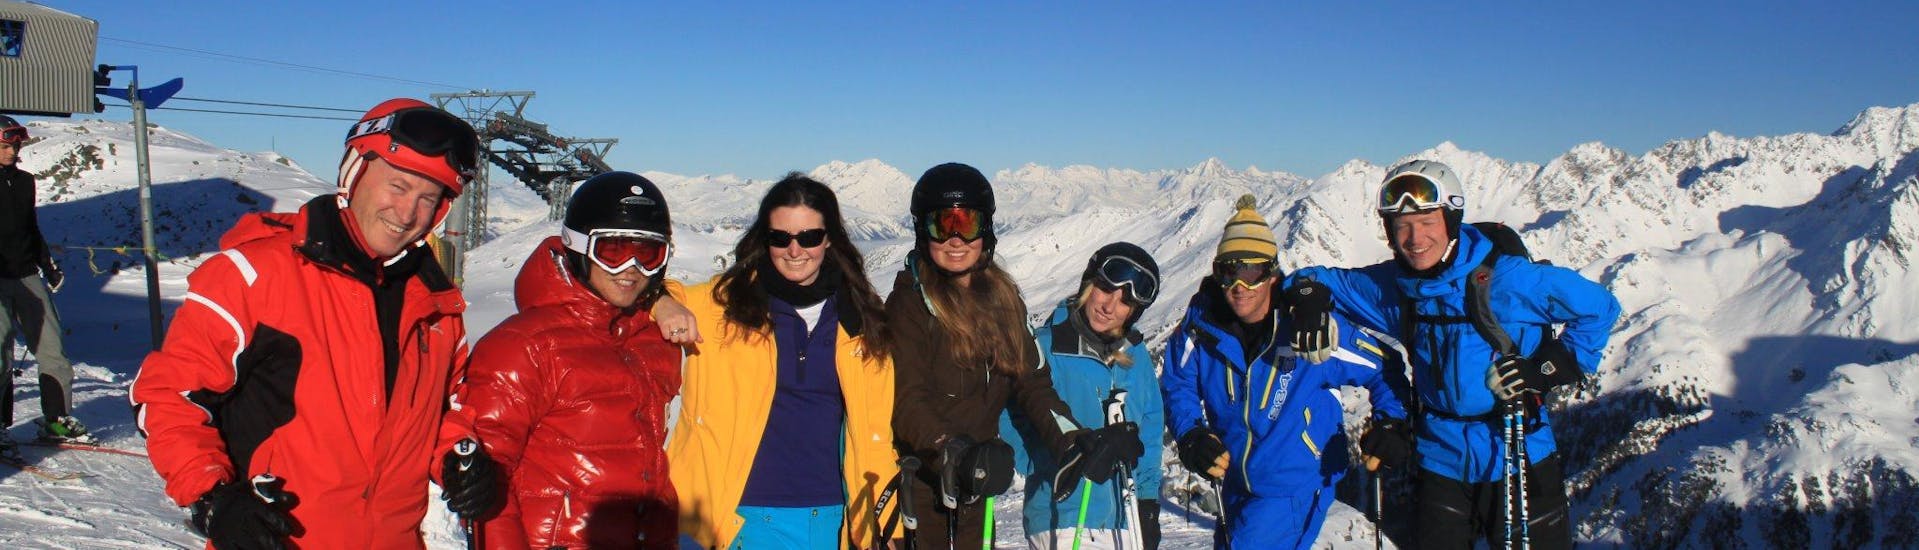 Clases de esquí para adultos a partir de 16 años para todos los niveles.